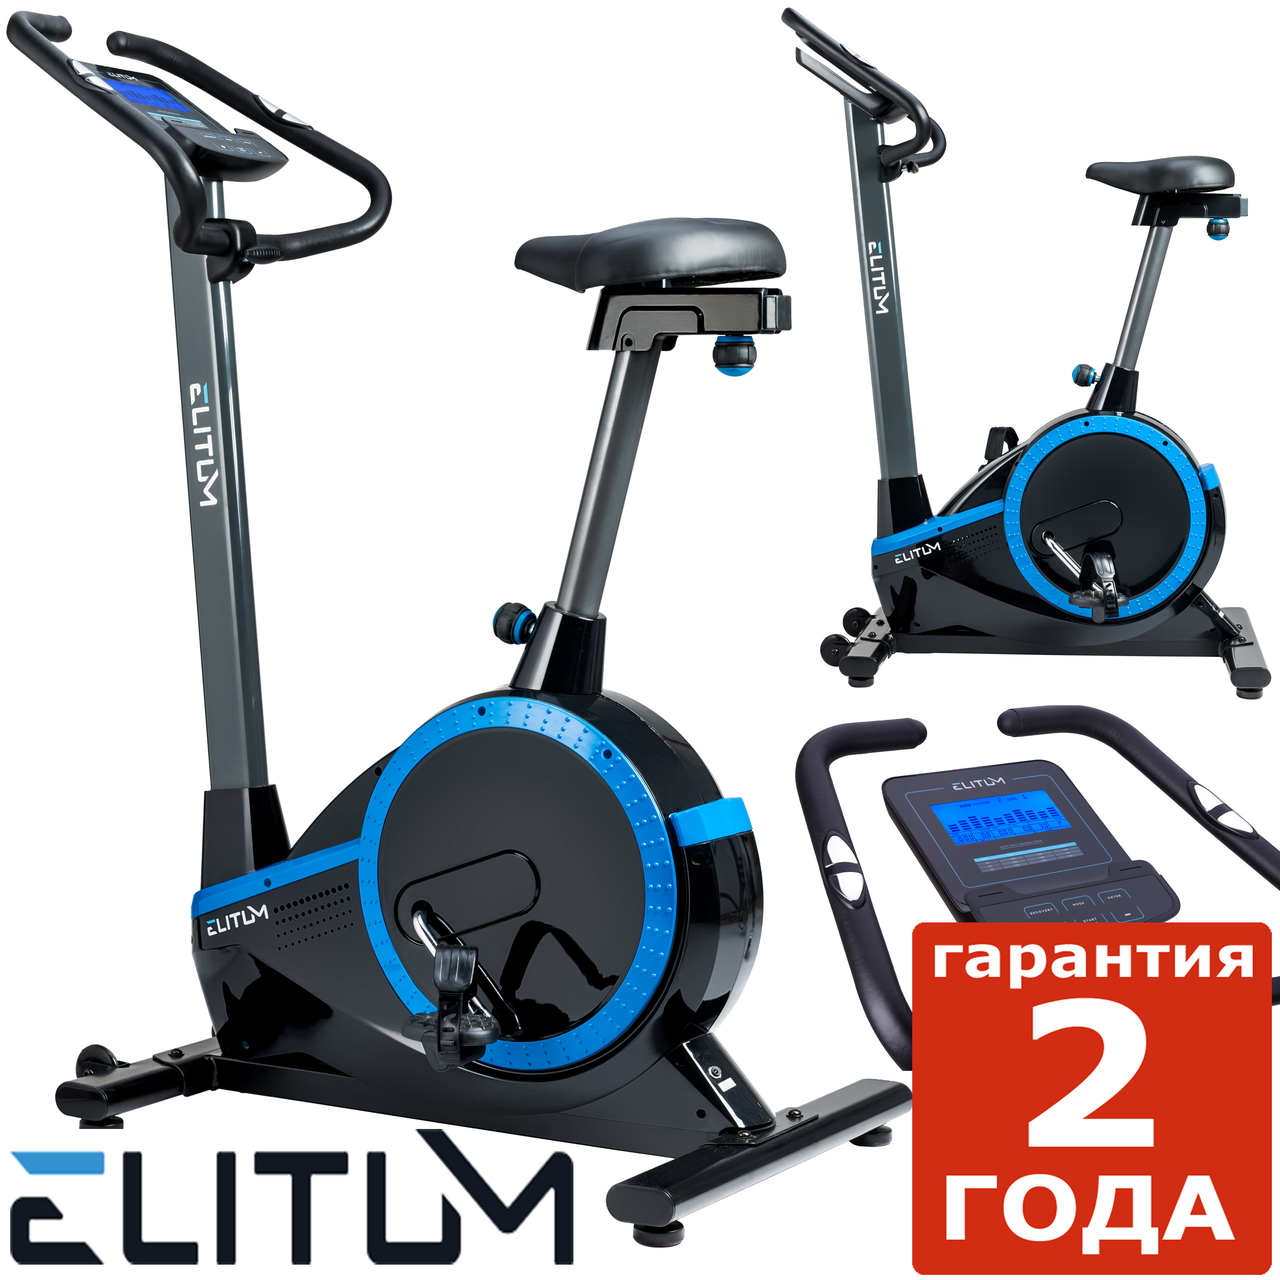 Електромагнітний велотренажер Elitum RX700 black до 150 кг. Гарантія 24 міс.